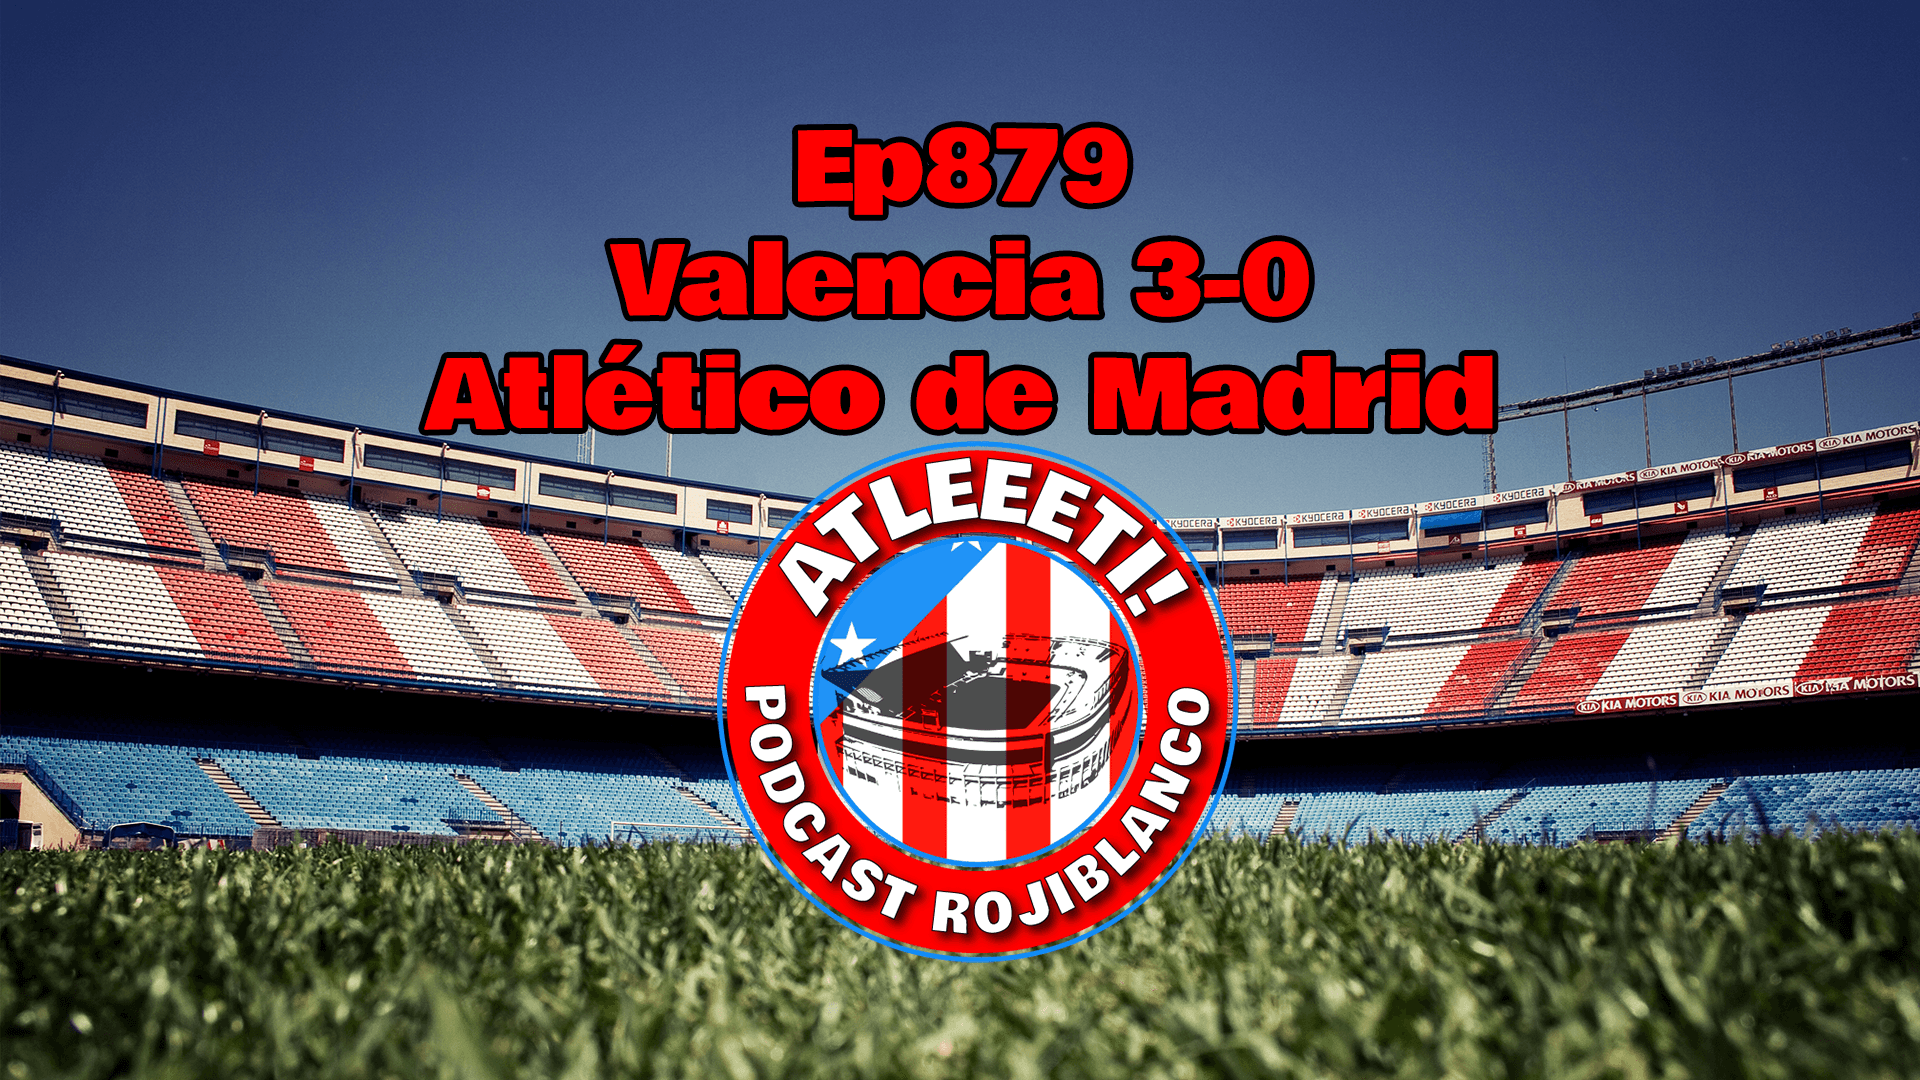 Ep879: Valencia 3-0 Atlético de Madrid